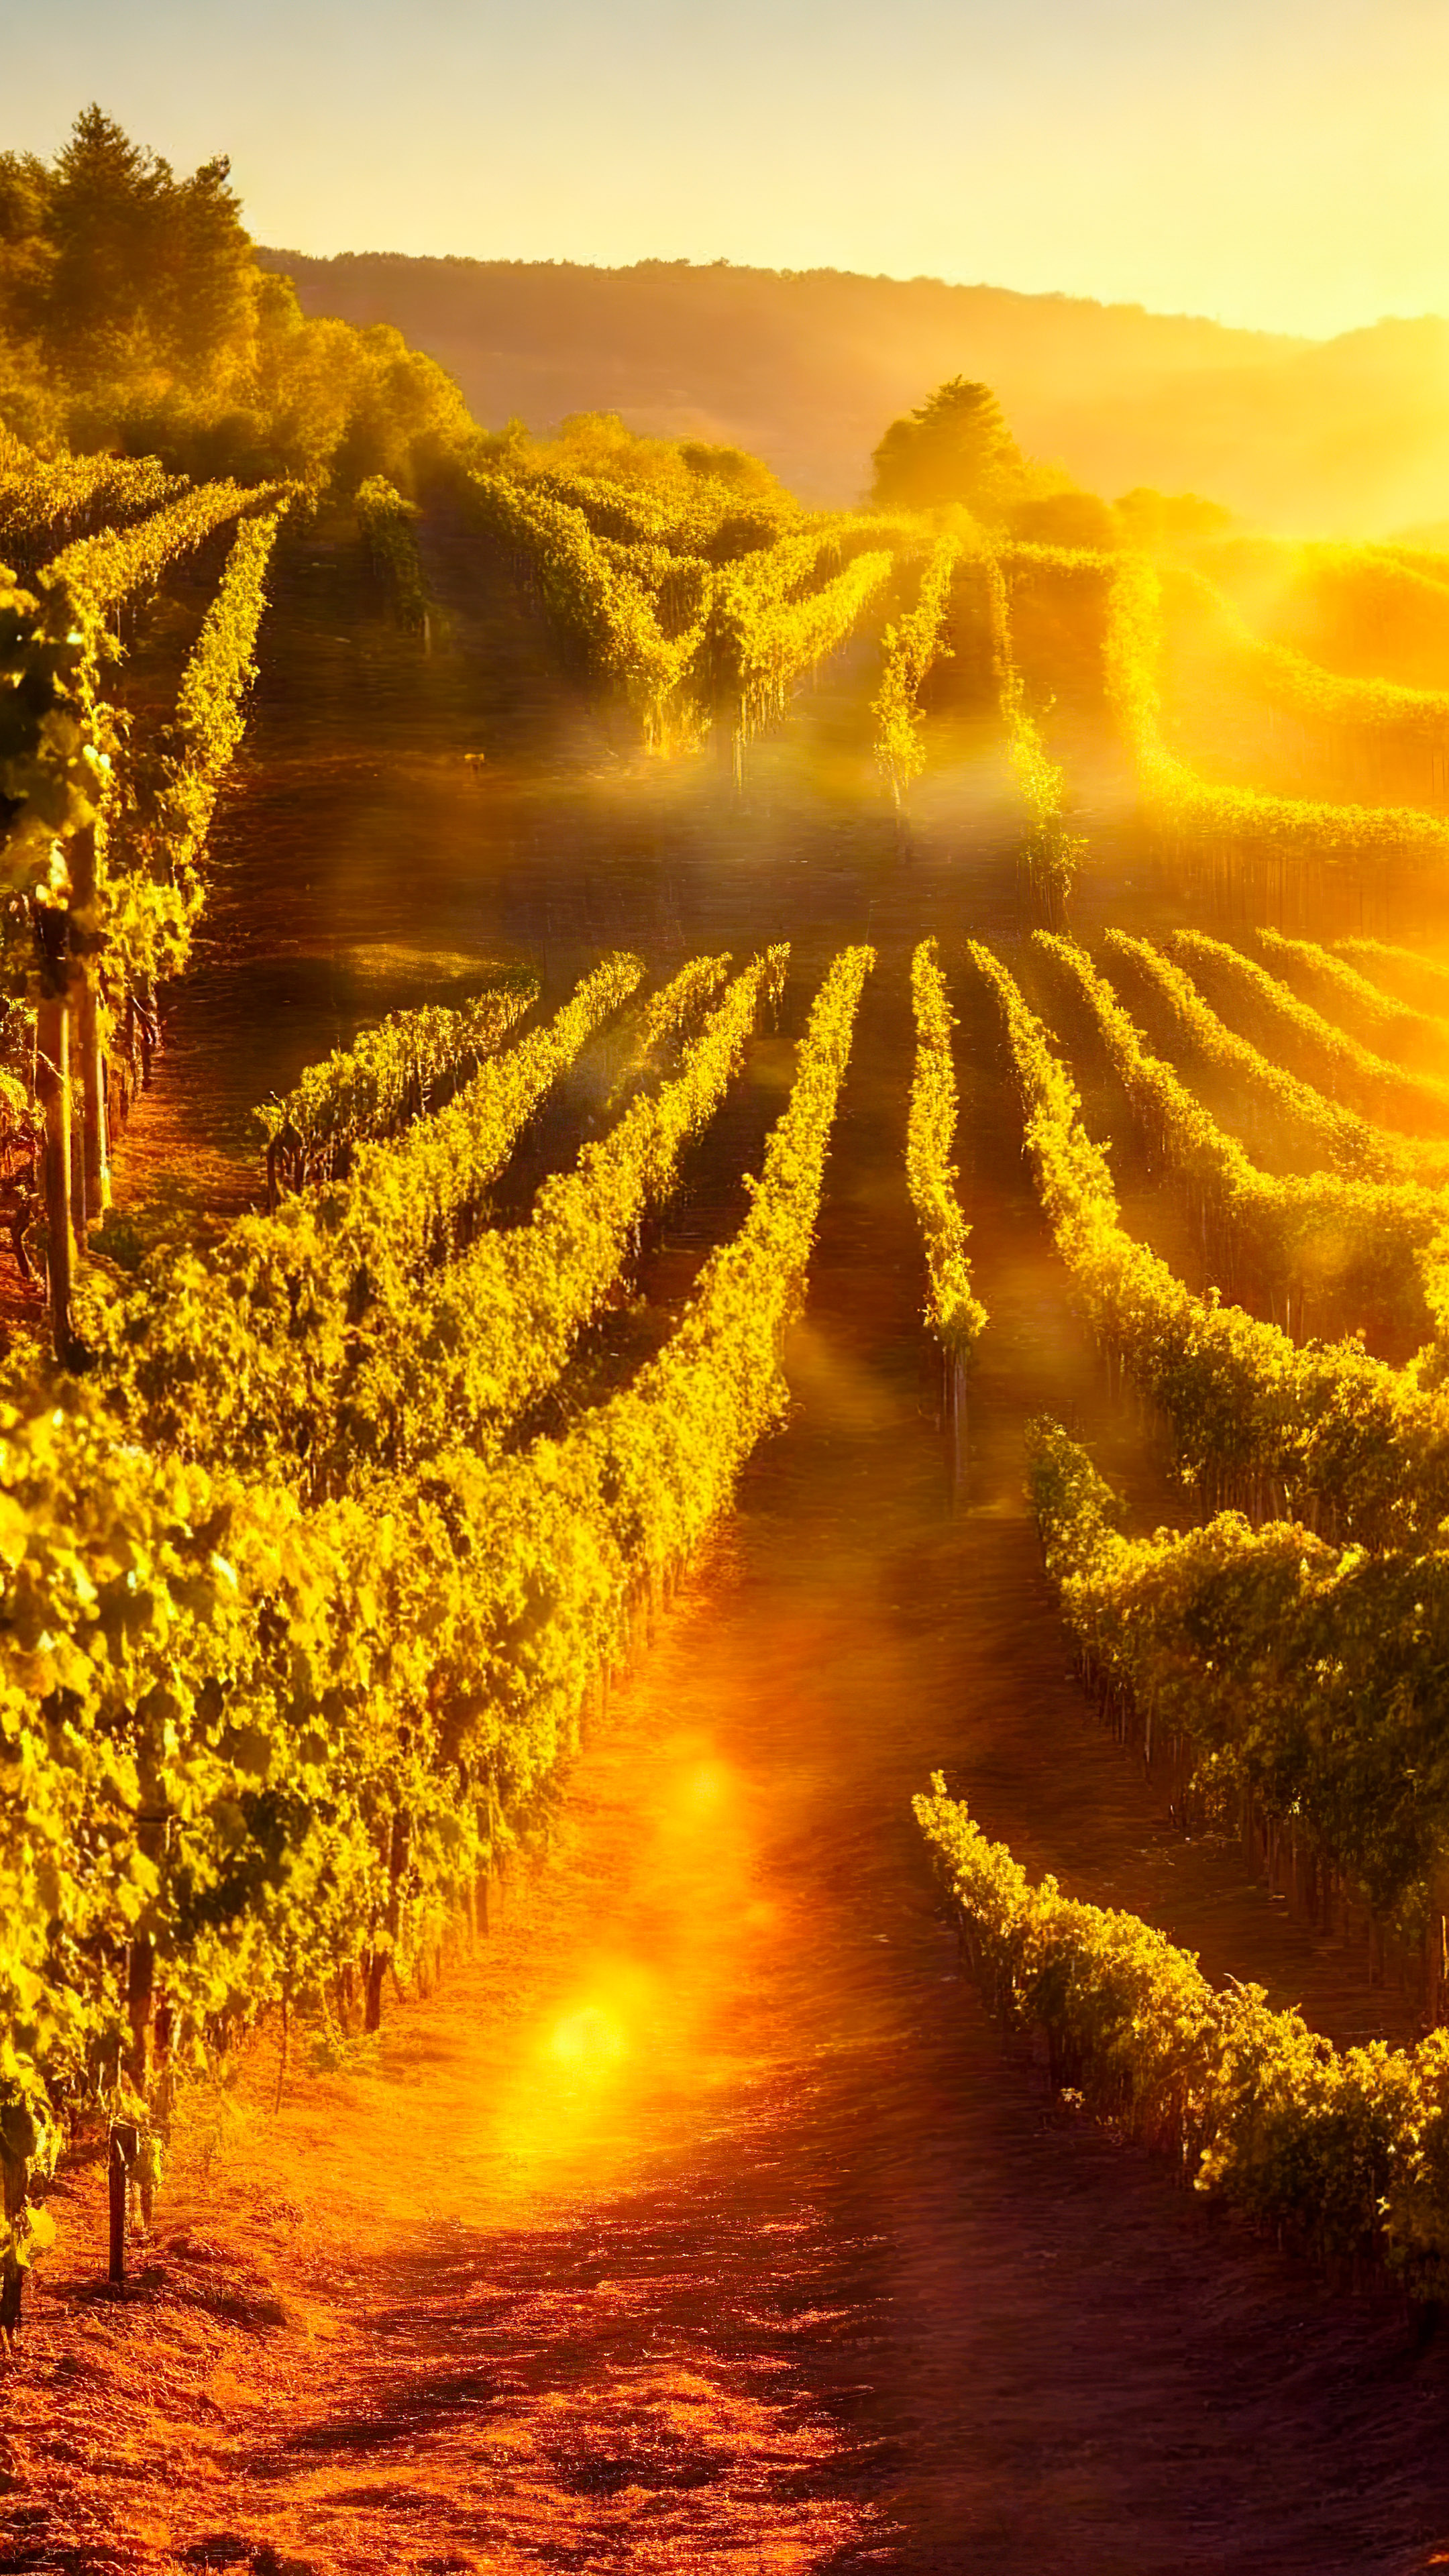 Profitez de la chaleur de notre fond d'écran de beaux paysages pour iPhone XS, présentant un vignoble pittoresque baigné de soleil doré, avec des rangées de vignes s'étendant à l'horizon.